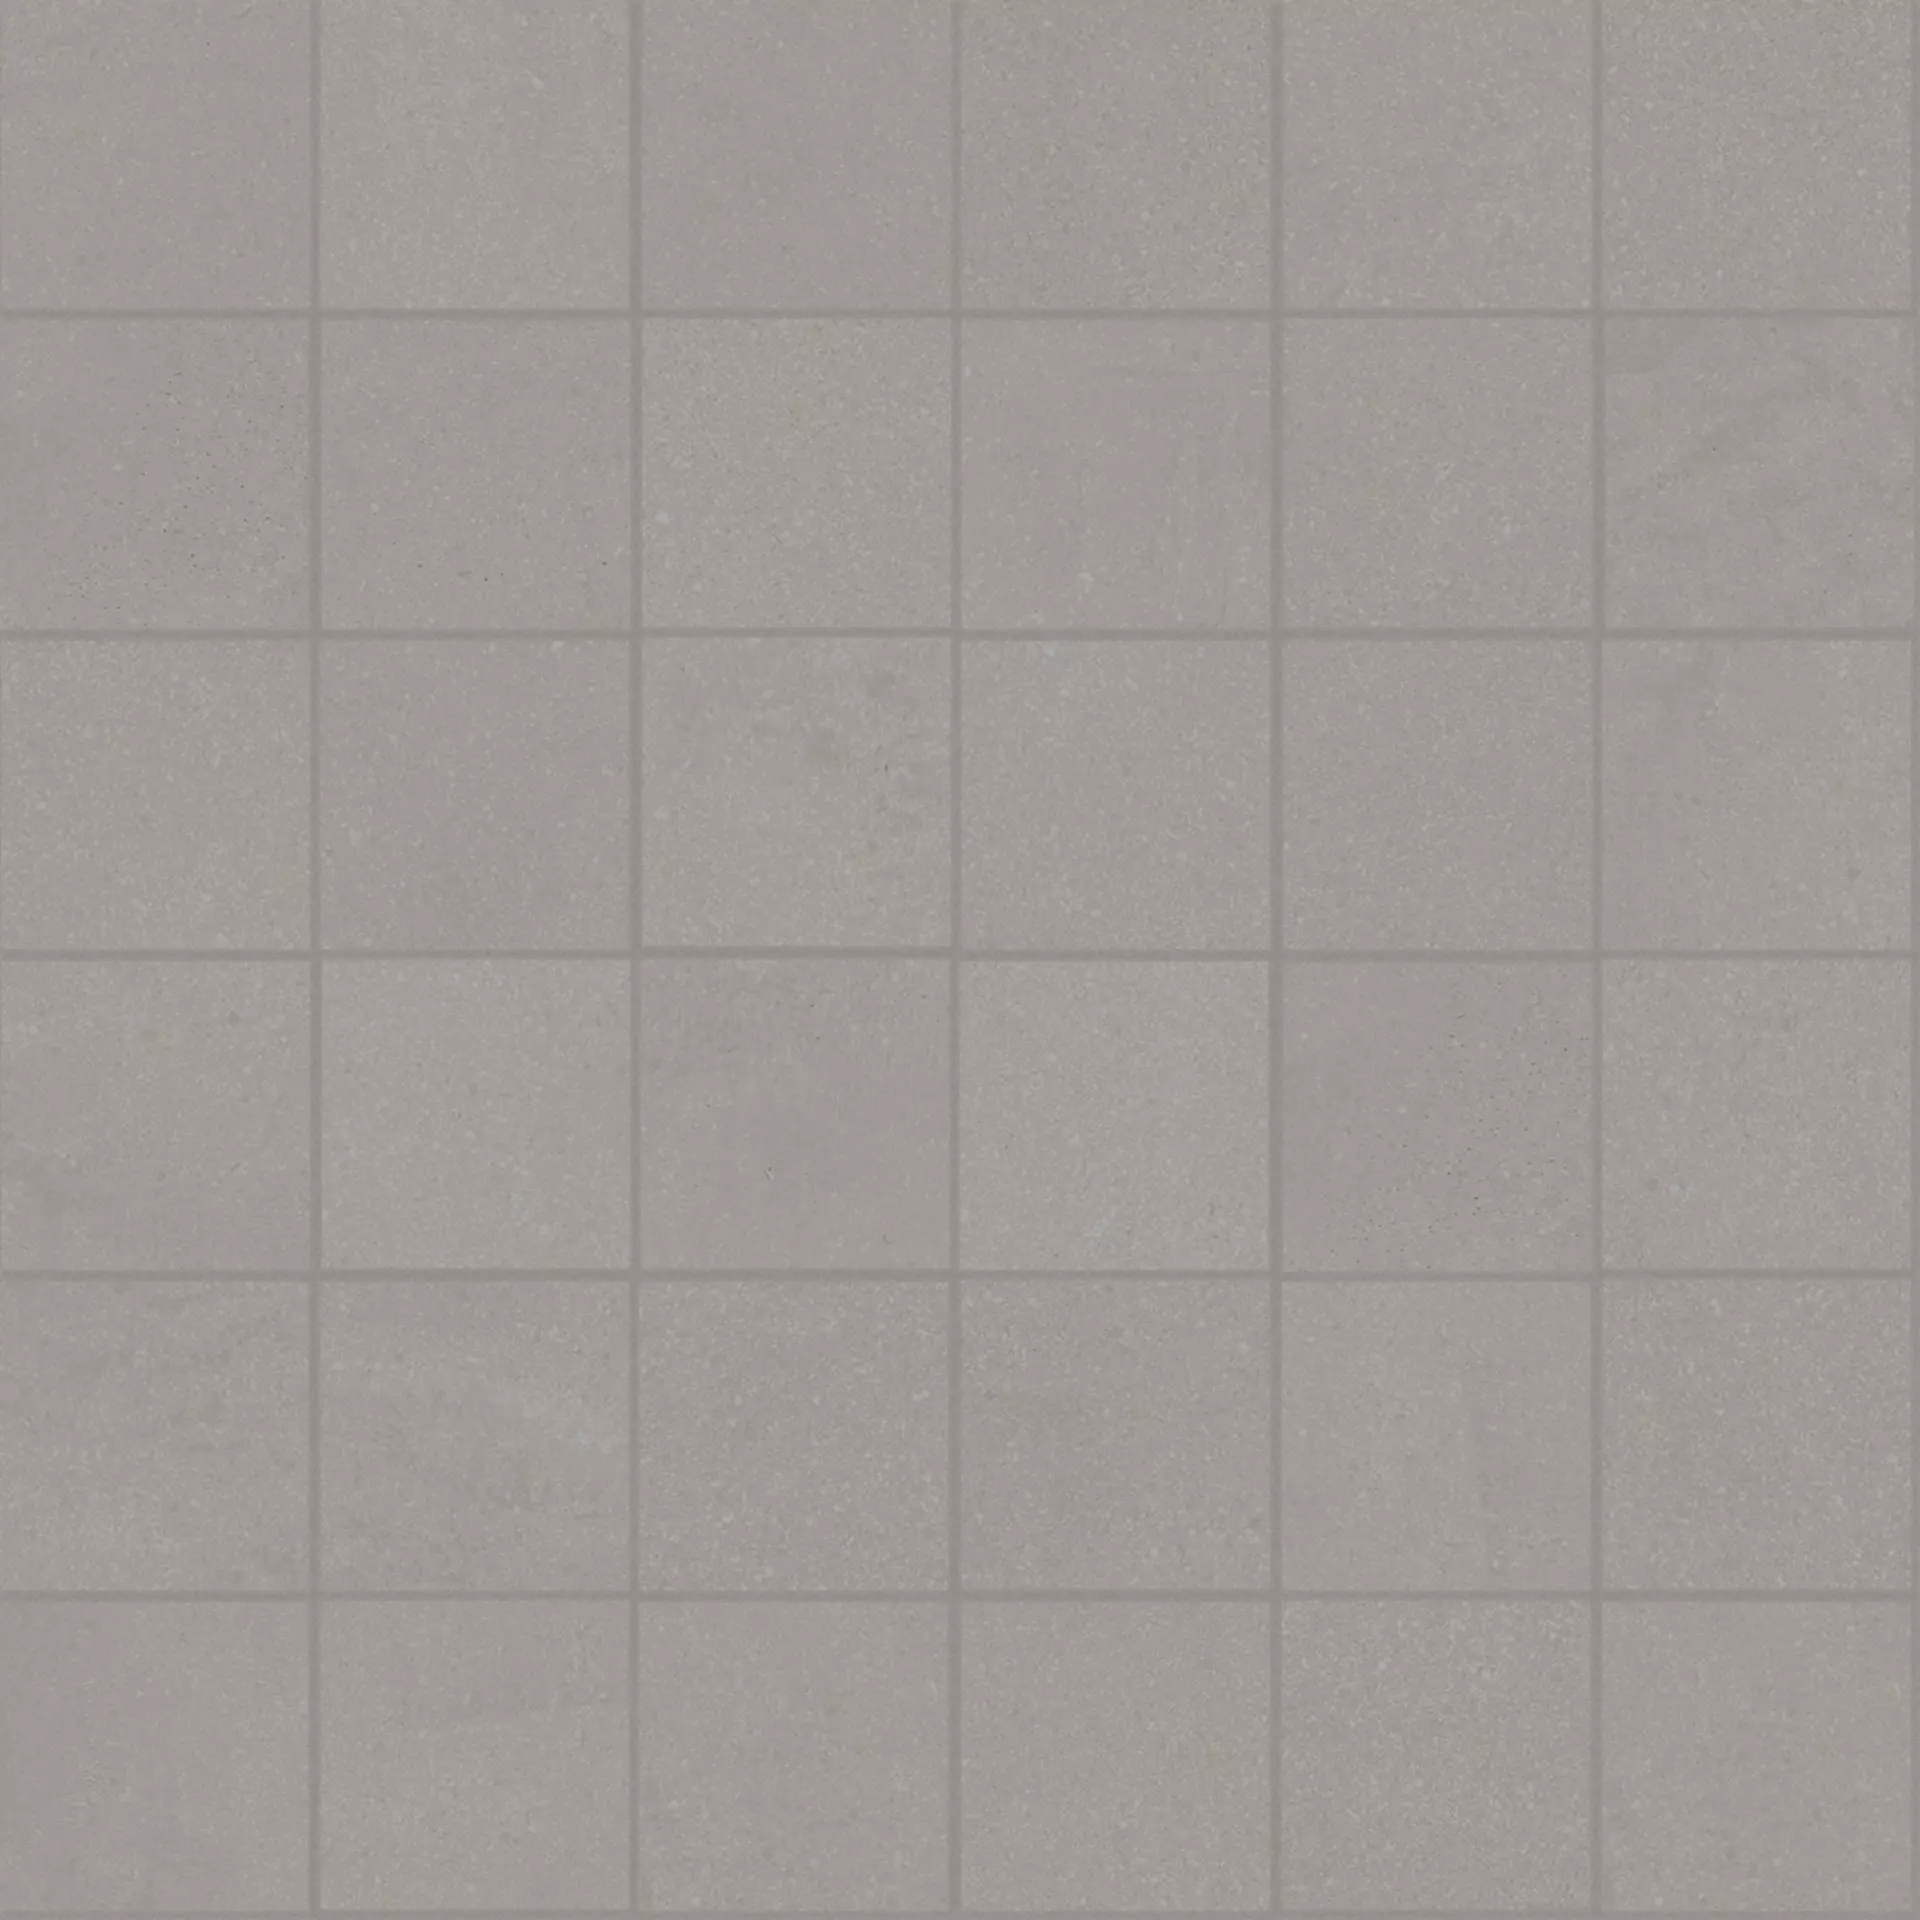 Bodenfliese,Wandfliese Marazzi Cementum Nickel Naturale – Matt Nickel MA95 matt natur 30x30cm Mosaik 5X5 10mm